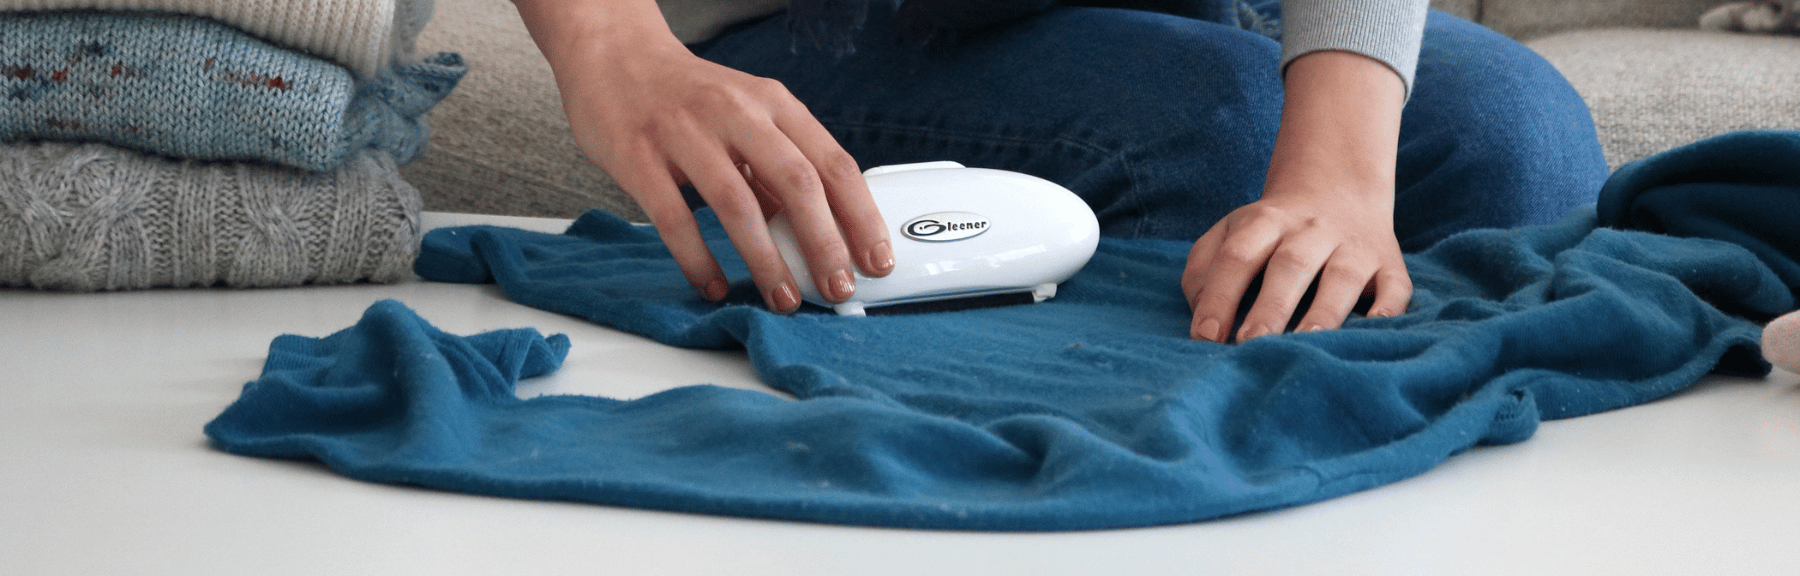 Cómo quitar las bolitas de la ropa interior